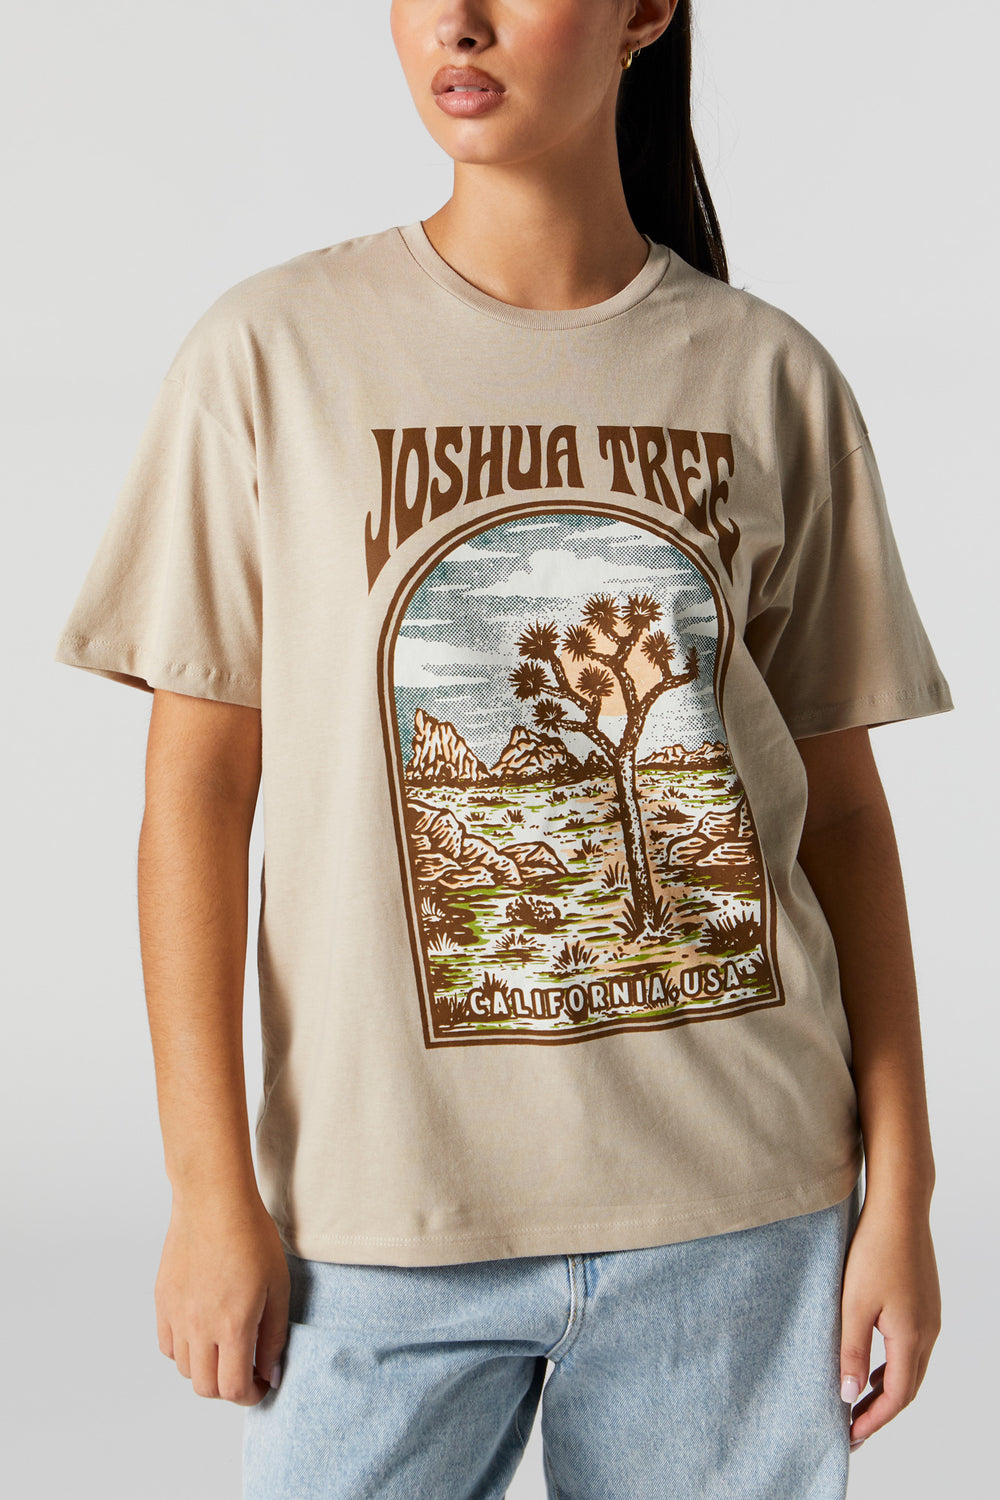 Joshua Tree Graphic Boyfriend T-Shirt Joshua Tree Graphic Boyfriend T-Shirt 1